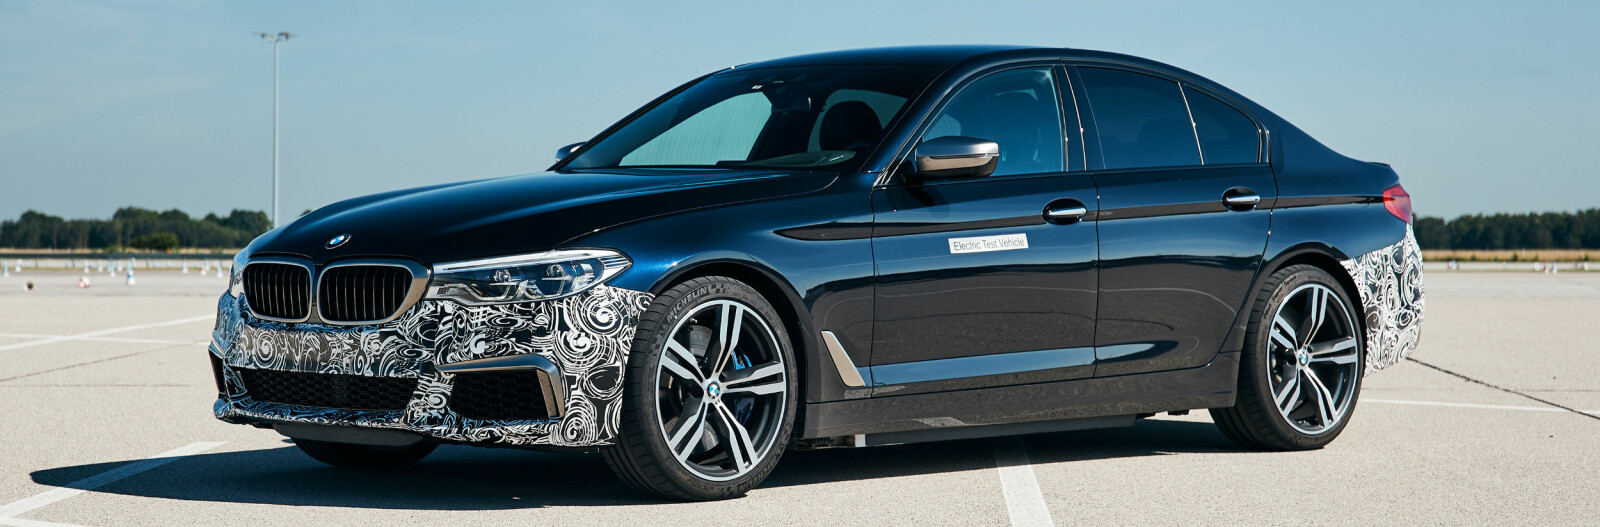 <b>TRE ELMOTORER:</b> I 2020 introduserer BMW femte generasjon elektrisk drivlinje. En av bilene som testes er en 5-serie med tre nye elektromotorer og en total effekt på 530 kW/720 hk. Akselerasjonen fra 0-100 km/t gjøres unna på godt under 3 sekunder. Elektromotoren og batteriene som nå testes vil bli å finne i kommende BMW-modeller.